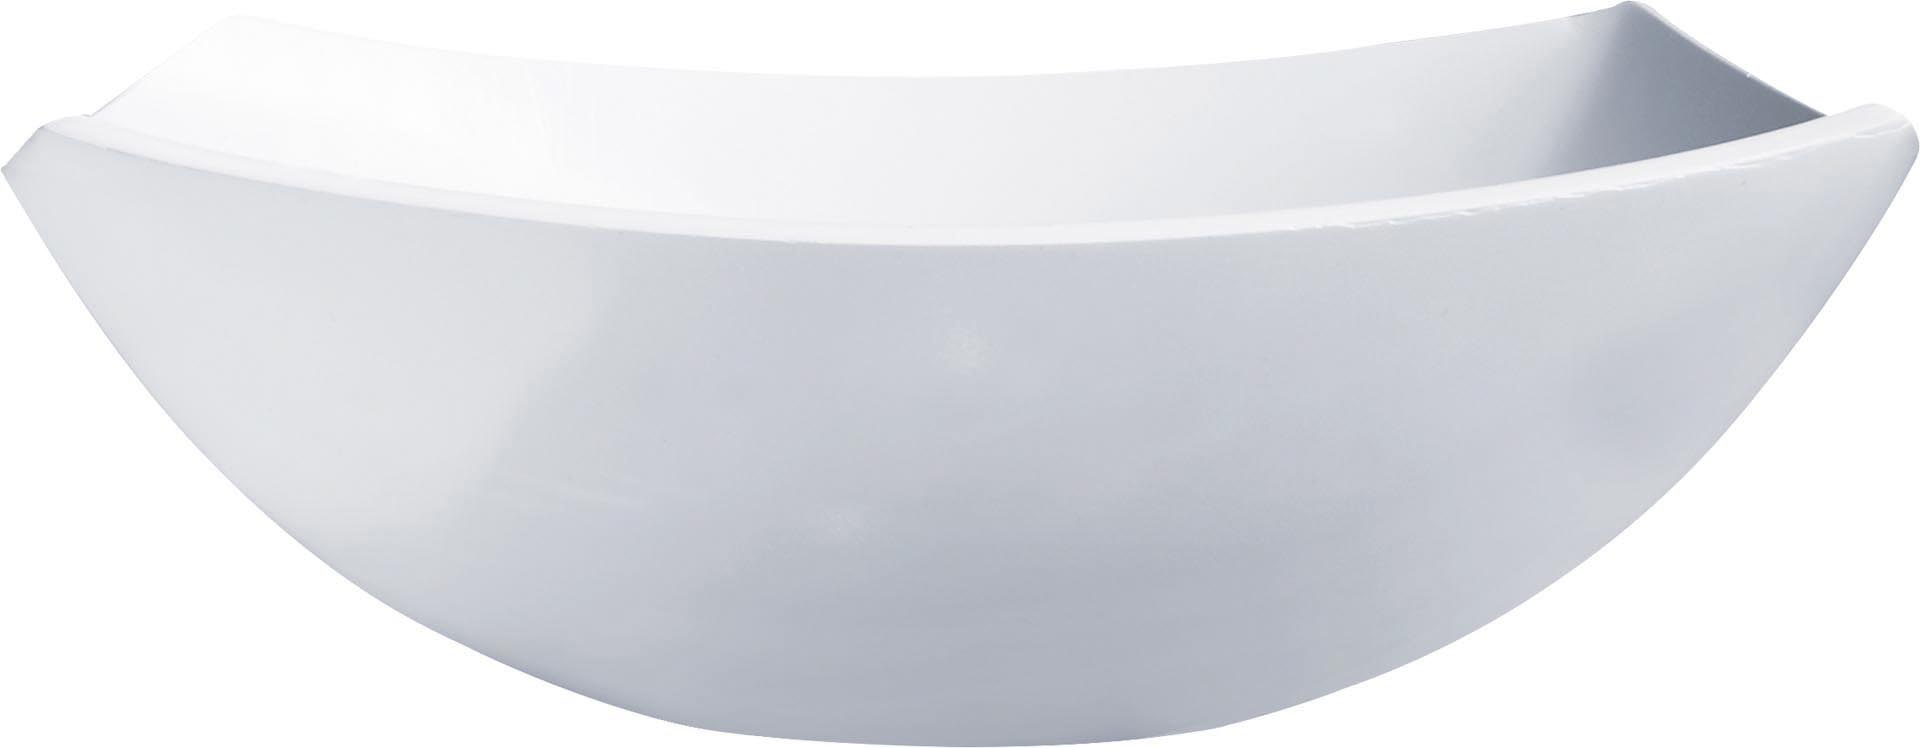 Hartglas-Schale "Quadrato" weiß 24 x 24 cm